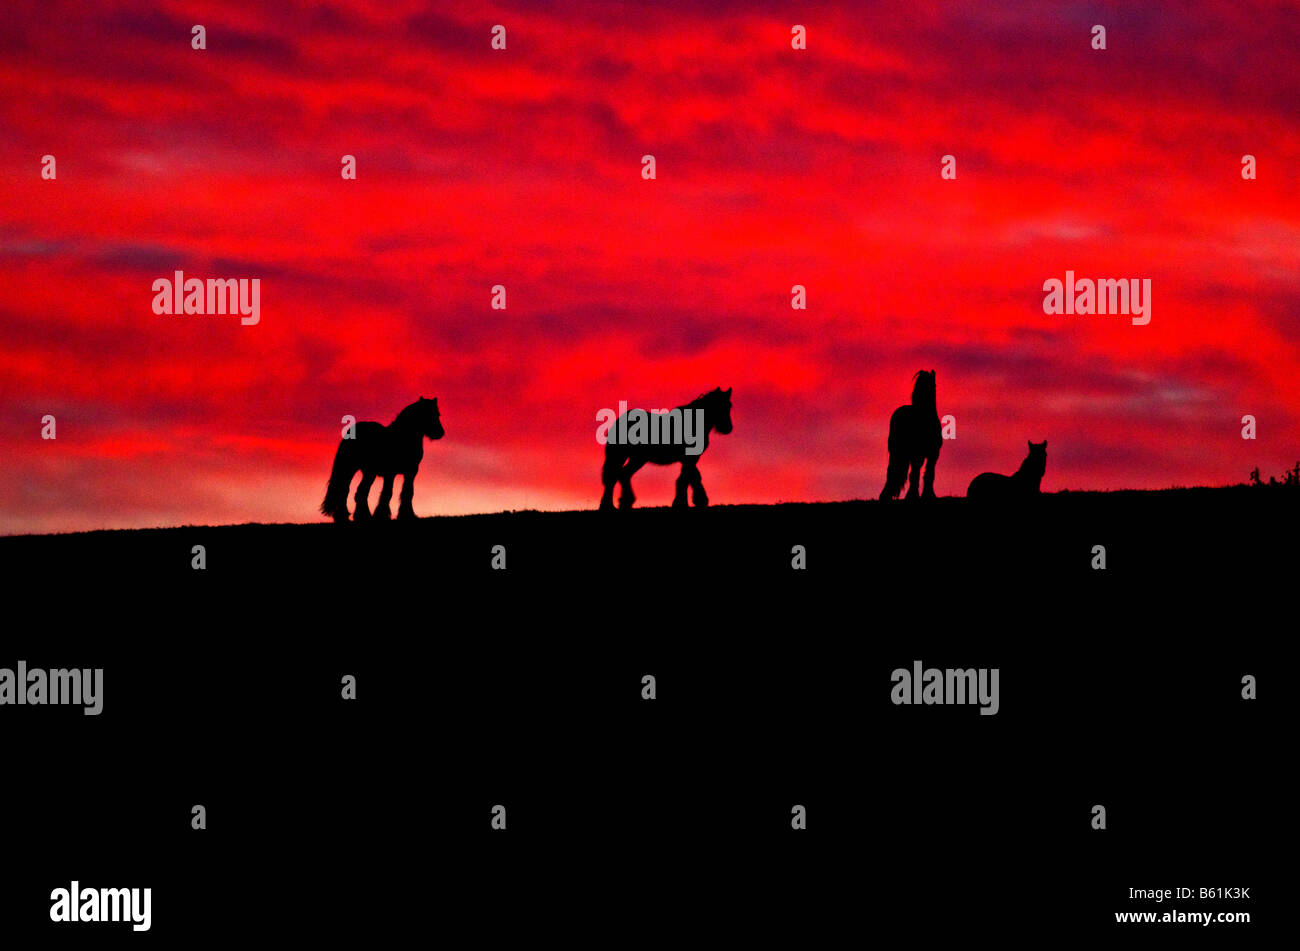 Los caballos en el horizonte al atardecer no imagen alterada digitalmente Foto de stock